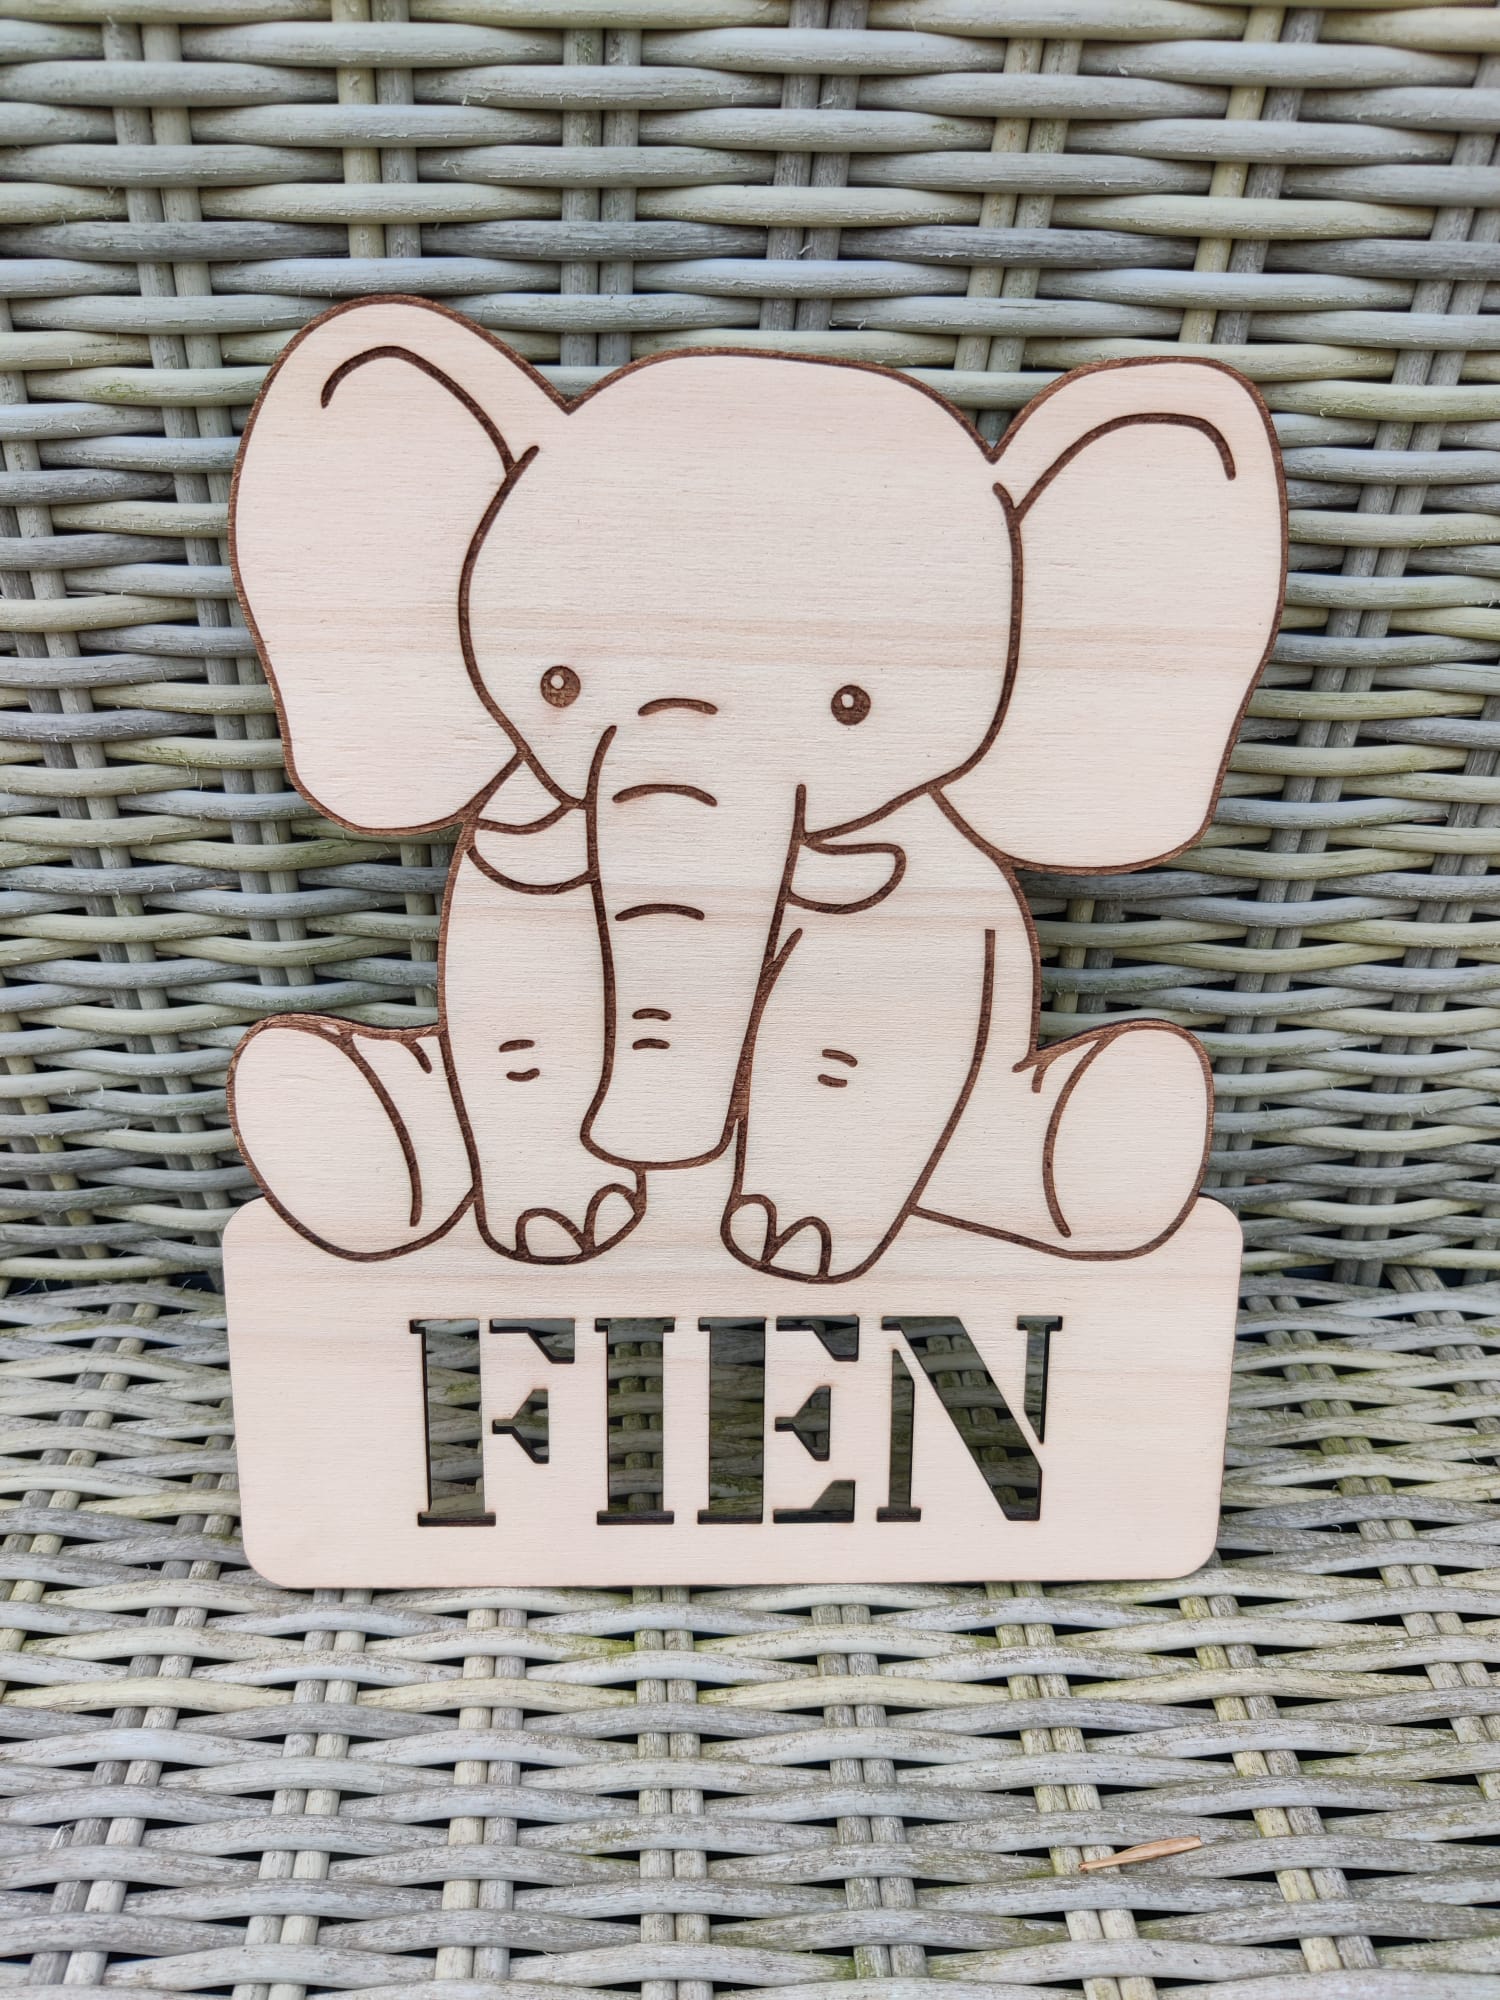 Naambordje in de vorm van een olifant.